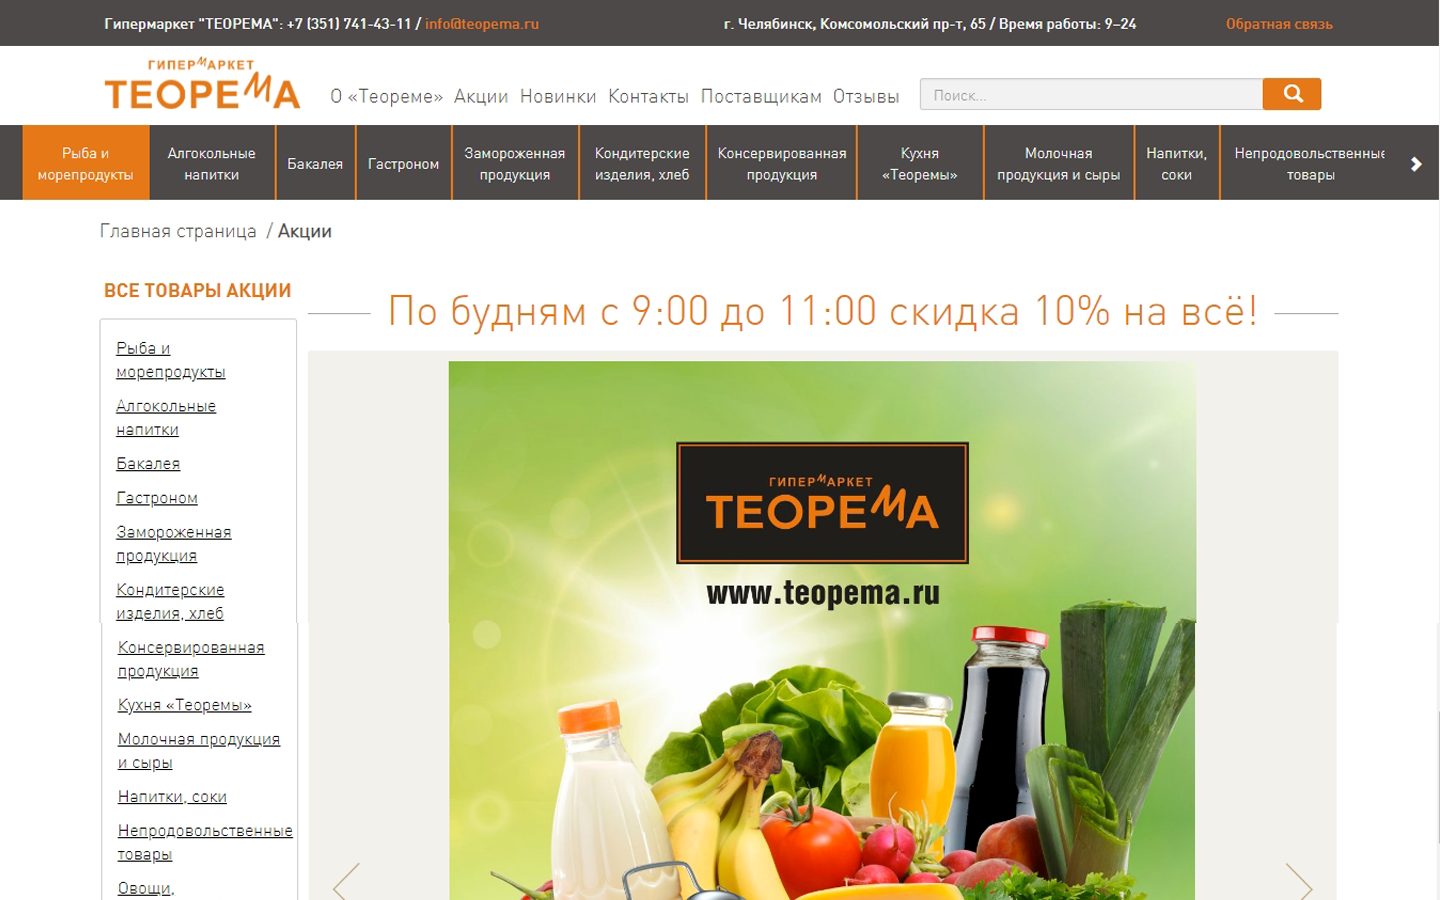 новый сайт для гипермаркета премиум класса "теорема" в челябинске